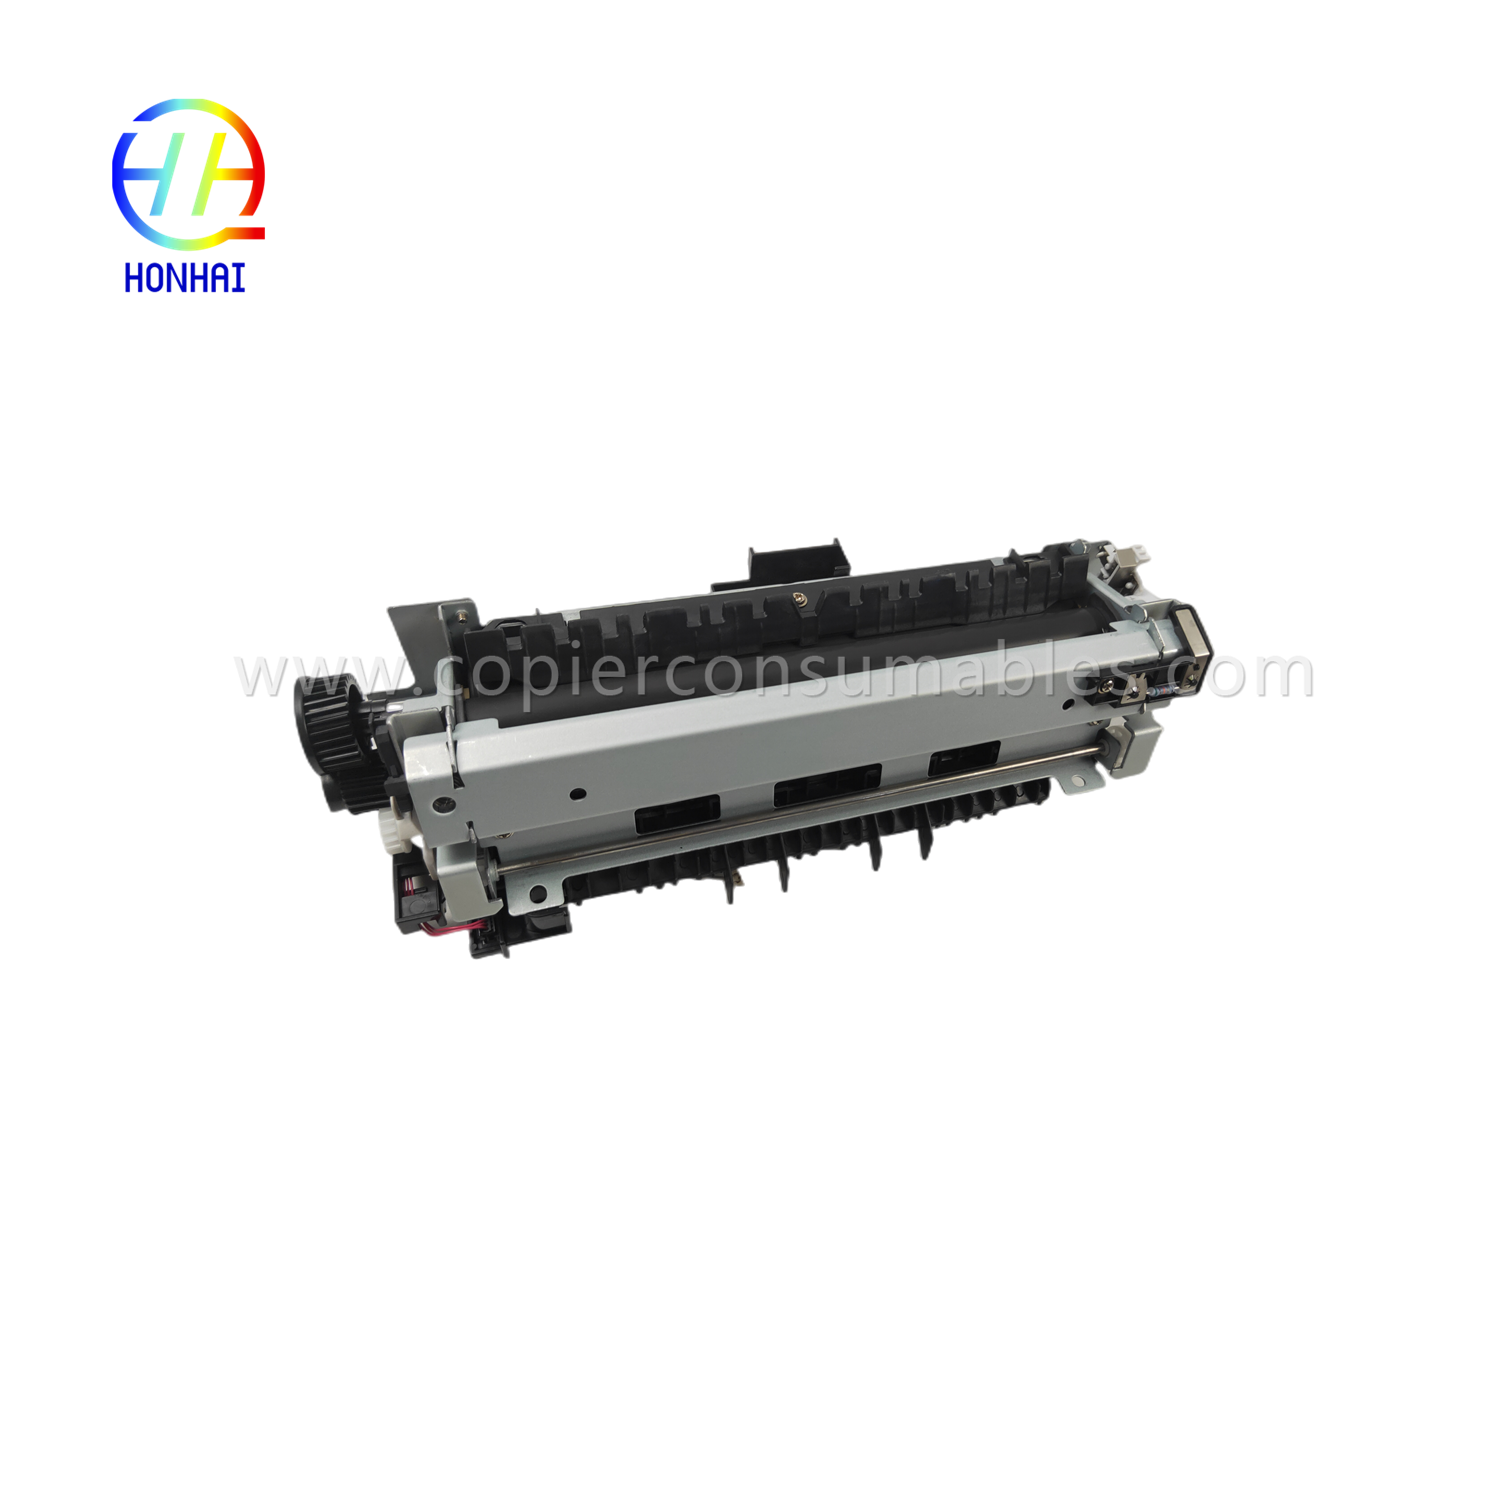 https://www.copierconsumables.com/fuser-assemblies-220v-japan-for-hp-521-525-m521-m525-rm1-8508-rm1-8508-000-fuser-unit-product/